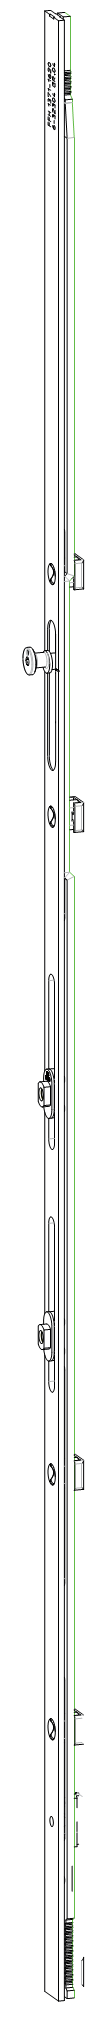 GU-ITALIA -  Cremonese GU-966 per complanare parallelo altezza maniglia fissa prolungabile senza dss - gr / dim. 590 - alt. man. 440 - lbb/hbb 996 - 1120